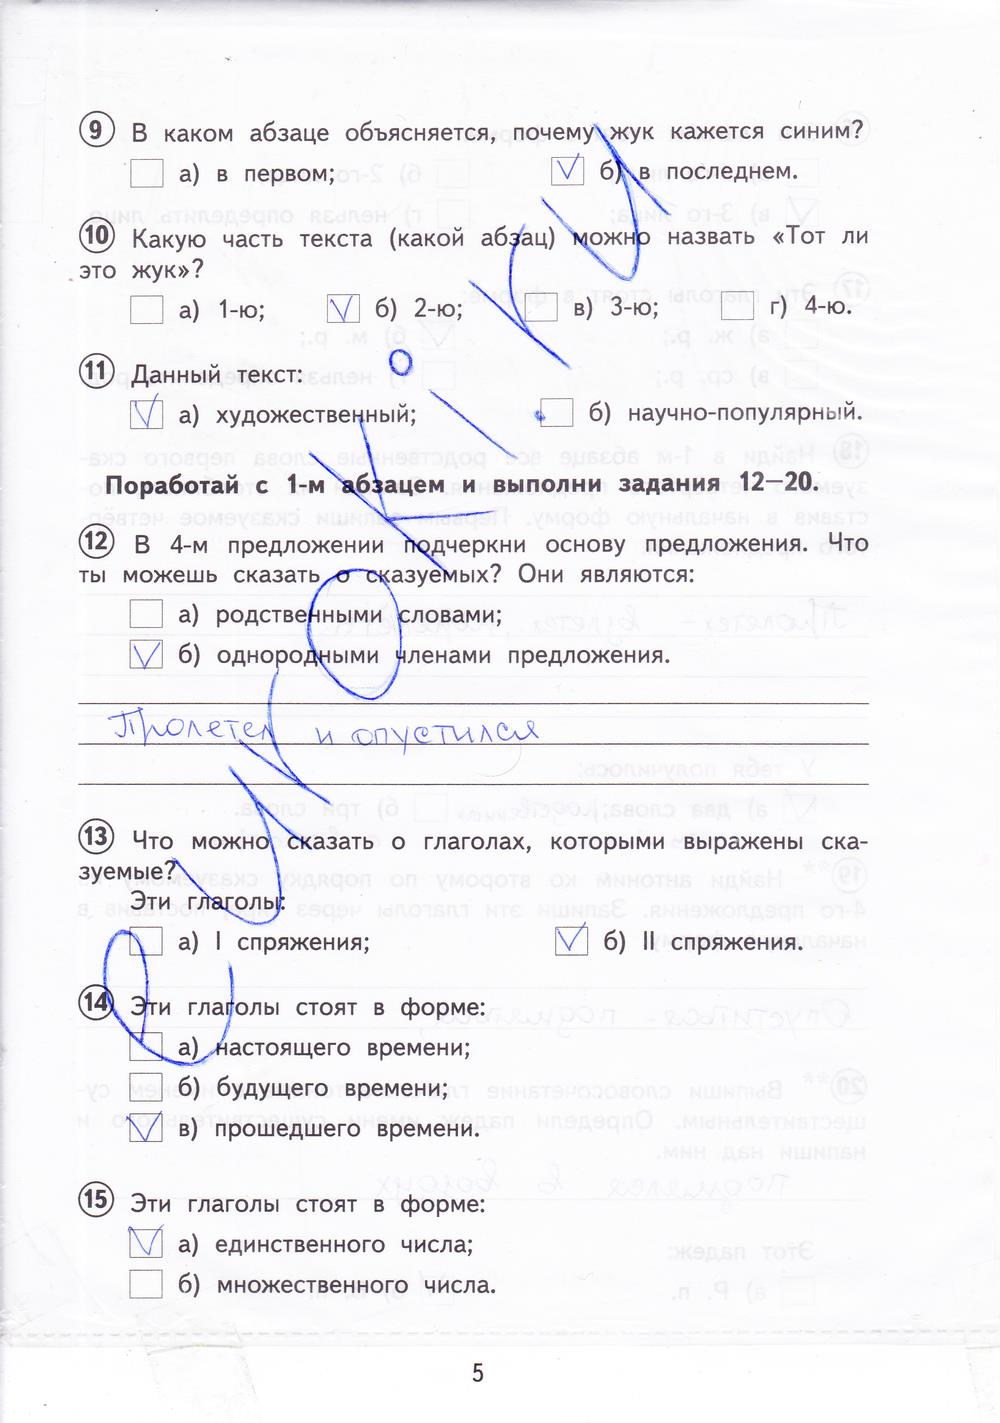 Русский язык 4 класс вариант 2002 ответы. Русский язык тетрадь для проверочных работ 4 класс Лаврова ответы. Русский язык 4 класс проверочные работы стр 4-5.